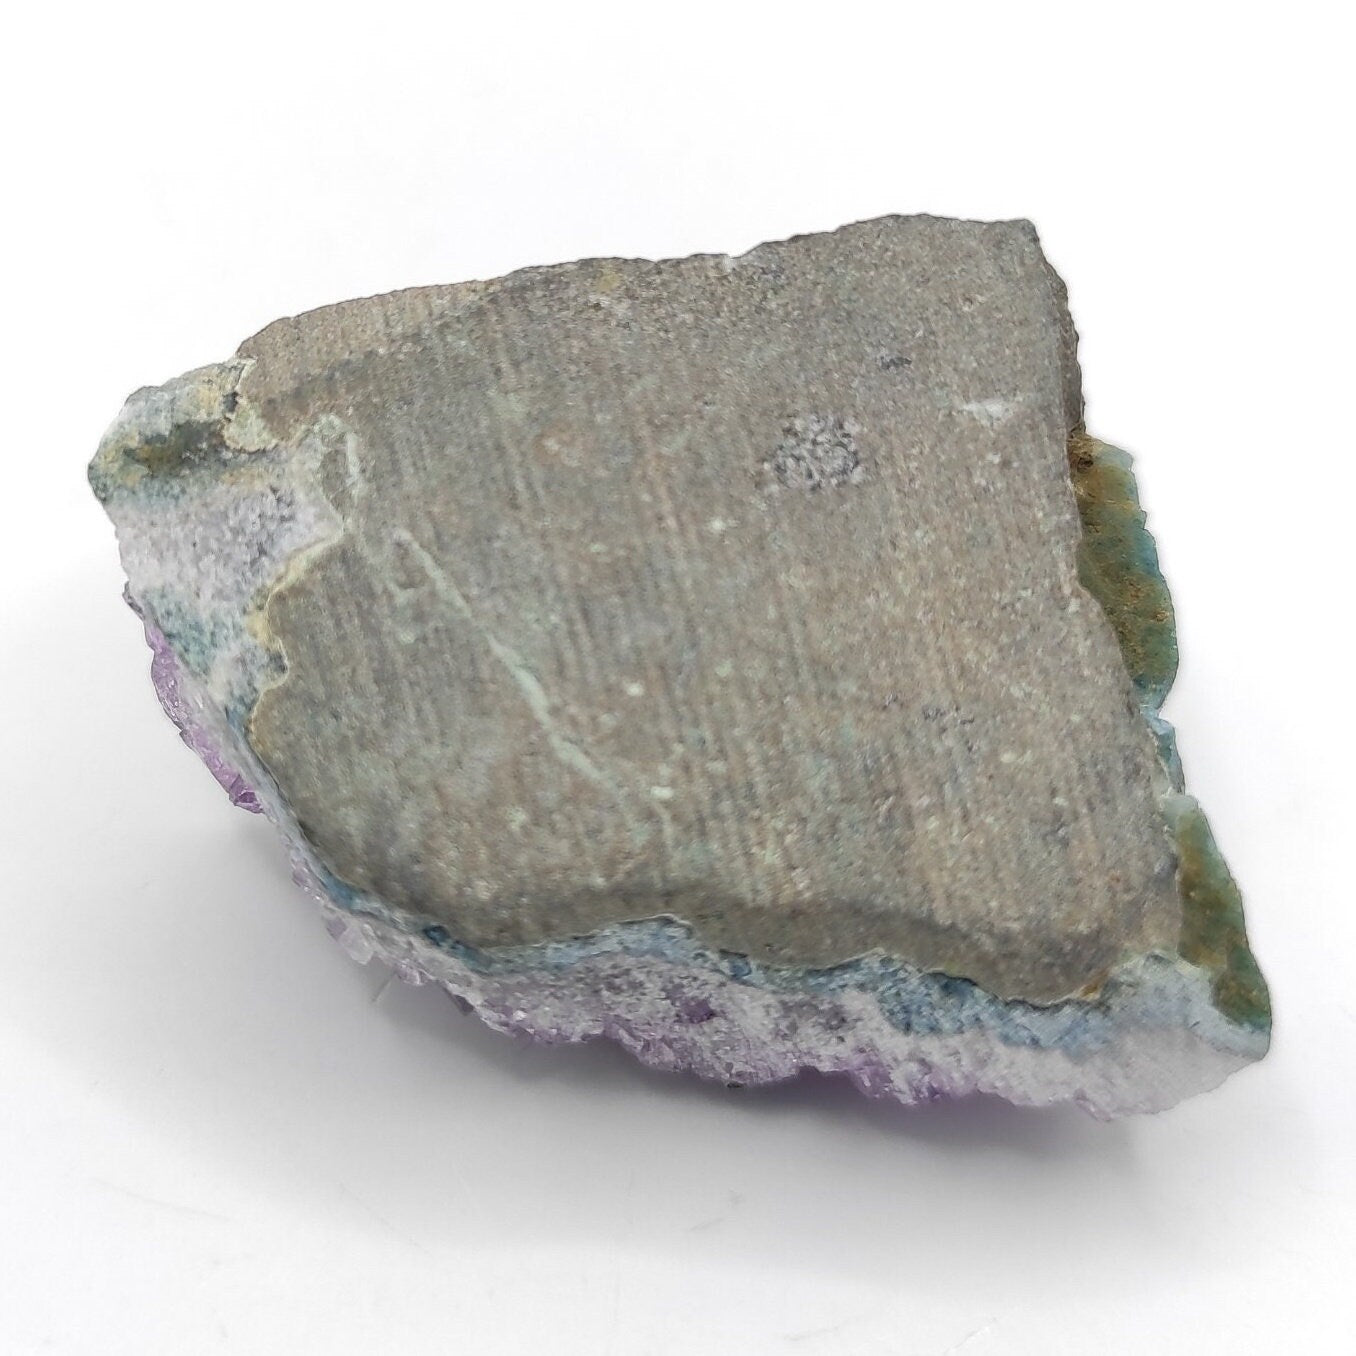 21g Amethyst Cluster from Uruguay - Small Amethyst Crystal - Purple Amethyst Mineral - Natural Amethyst Specimen from Artigas, Uruguay